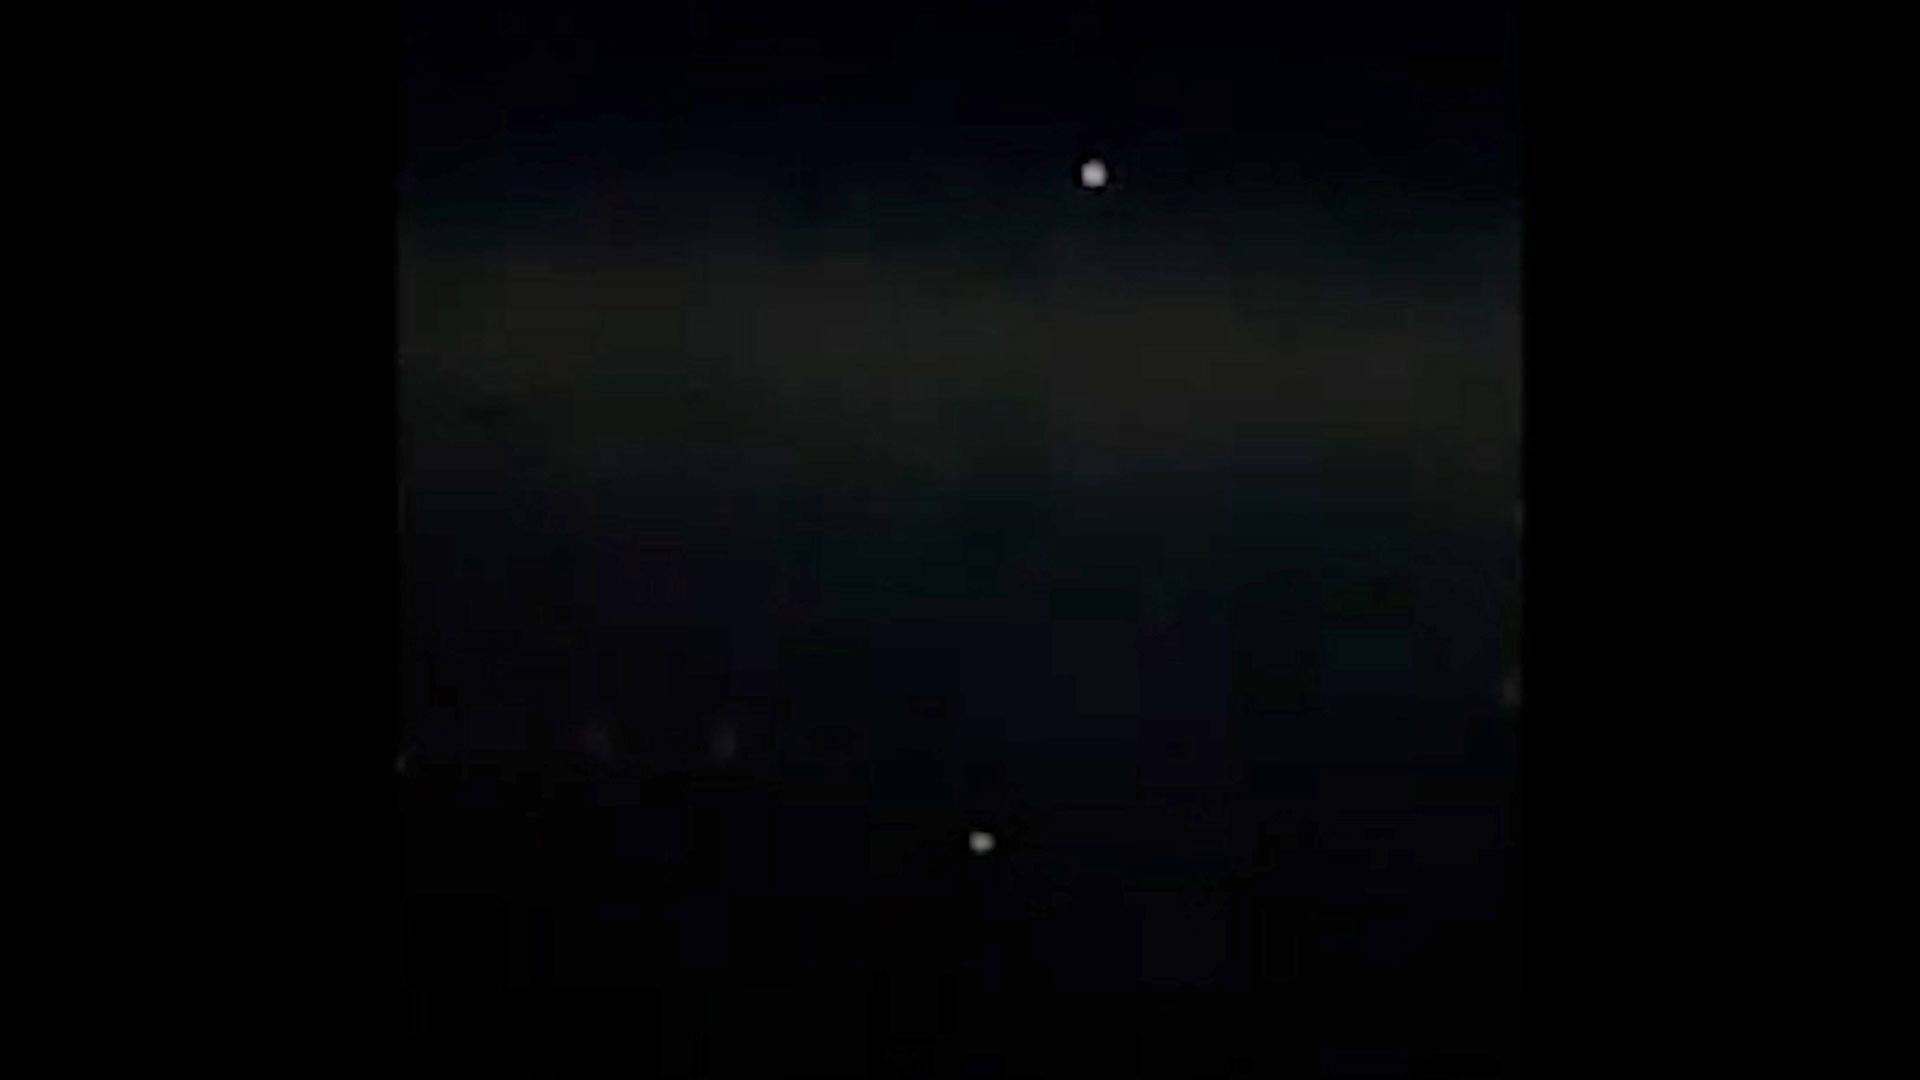 Esta imagen habría sido captada por una de las tripulaciones que avistó los objetos extraños, en esta foto aparecen como dos luces blancas en el cielo